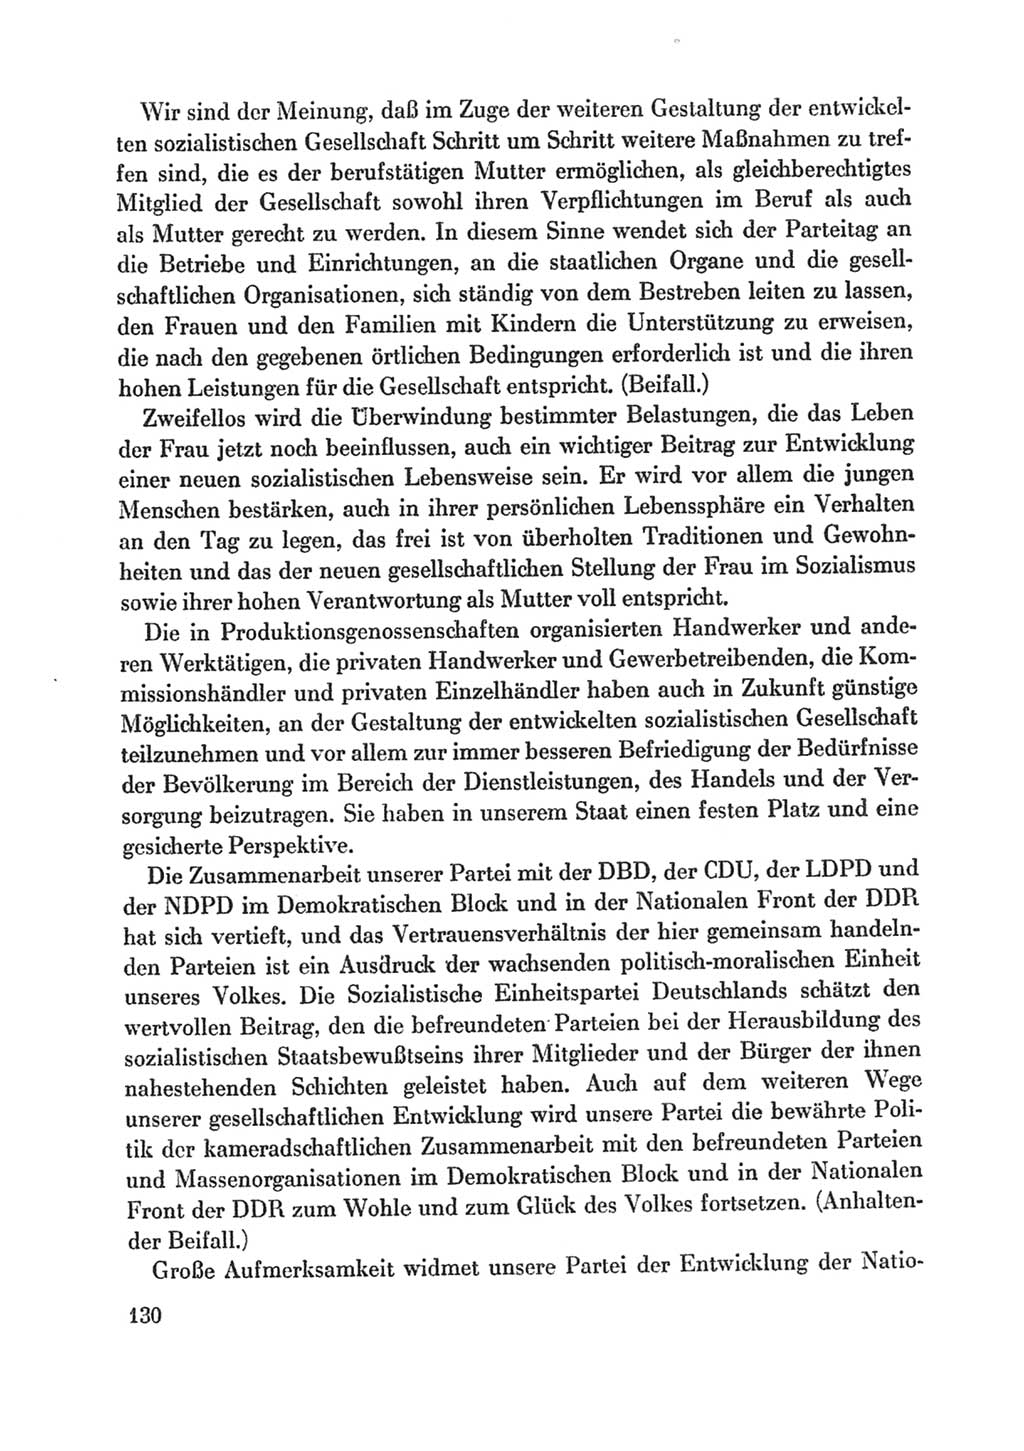 Protokoll der Verhandlungen des Ⅸ. Parteitages der Sozialistischen Einheitspartei Deutschlands (SED) [Deutsche Demokratische Republik (DDR)] 1976, Band 1, Seite 130 (Prot. Verh. Ⅸ. PT SED DDR 1976, Bd. 1, S. 130)